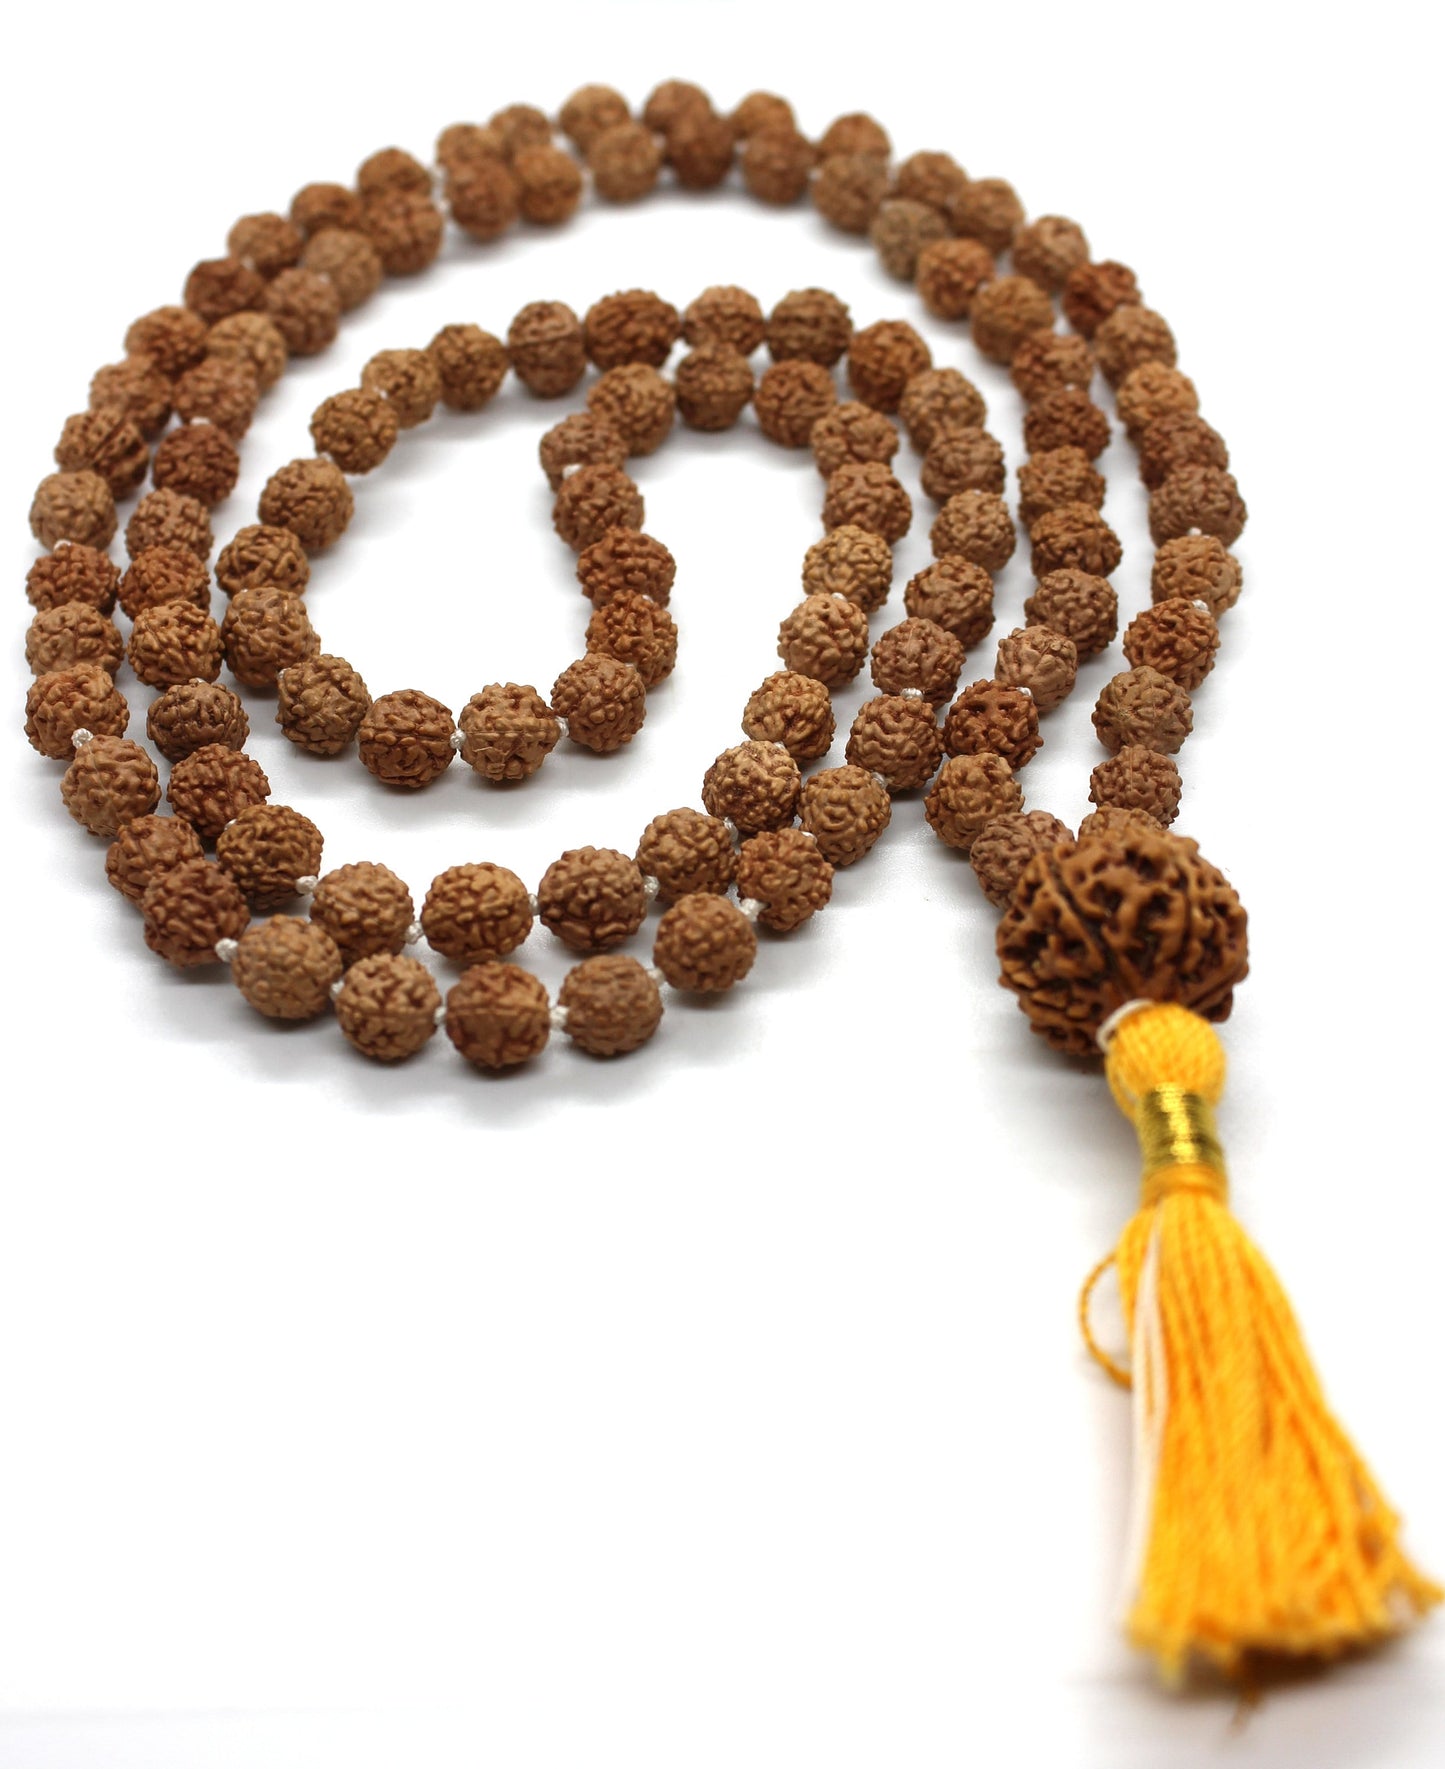 Rudraksha 7 Mukhi Guru Baad Mala, Rudraksh Japa Mala Rosary 108 +1 Bead Yoga Hindu PRAYER MEDITATION Raiki genuine 7 Mukhi Faces  Energised